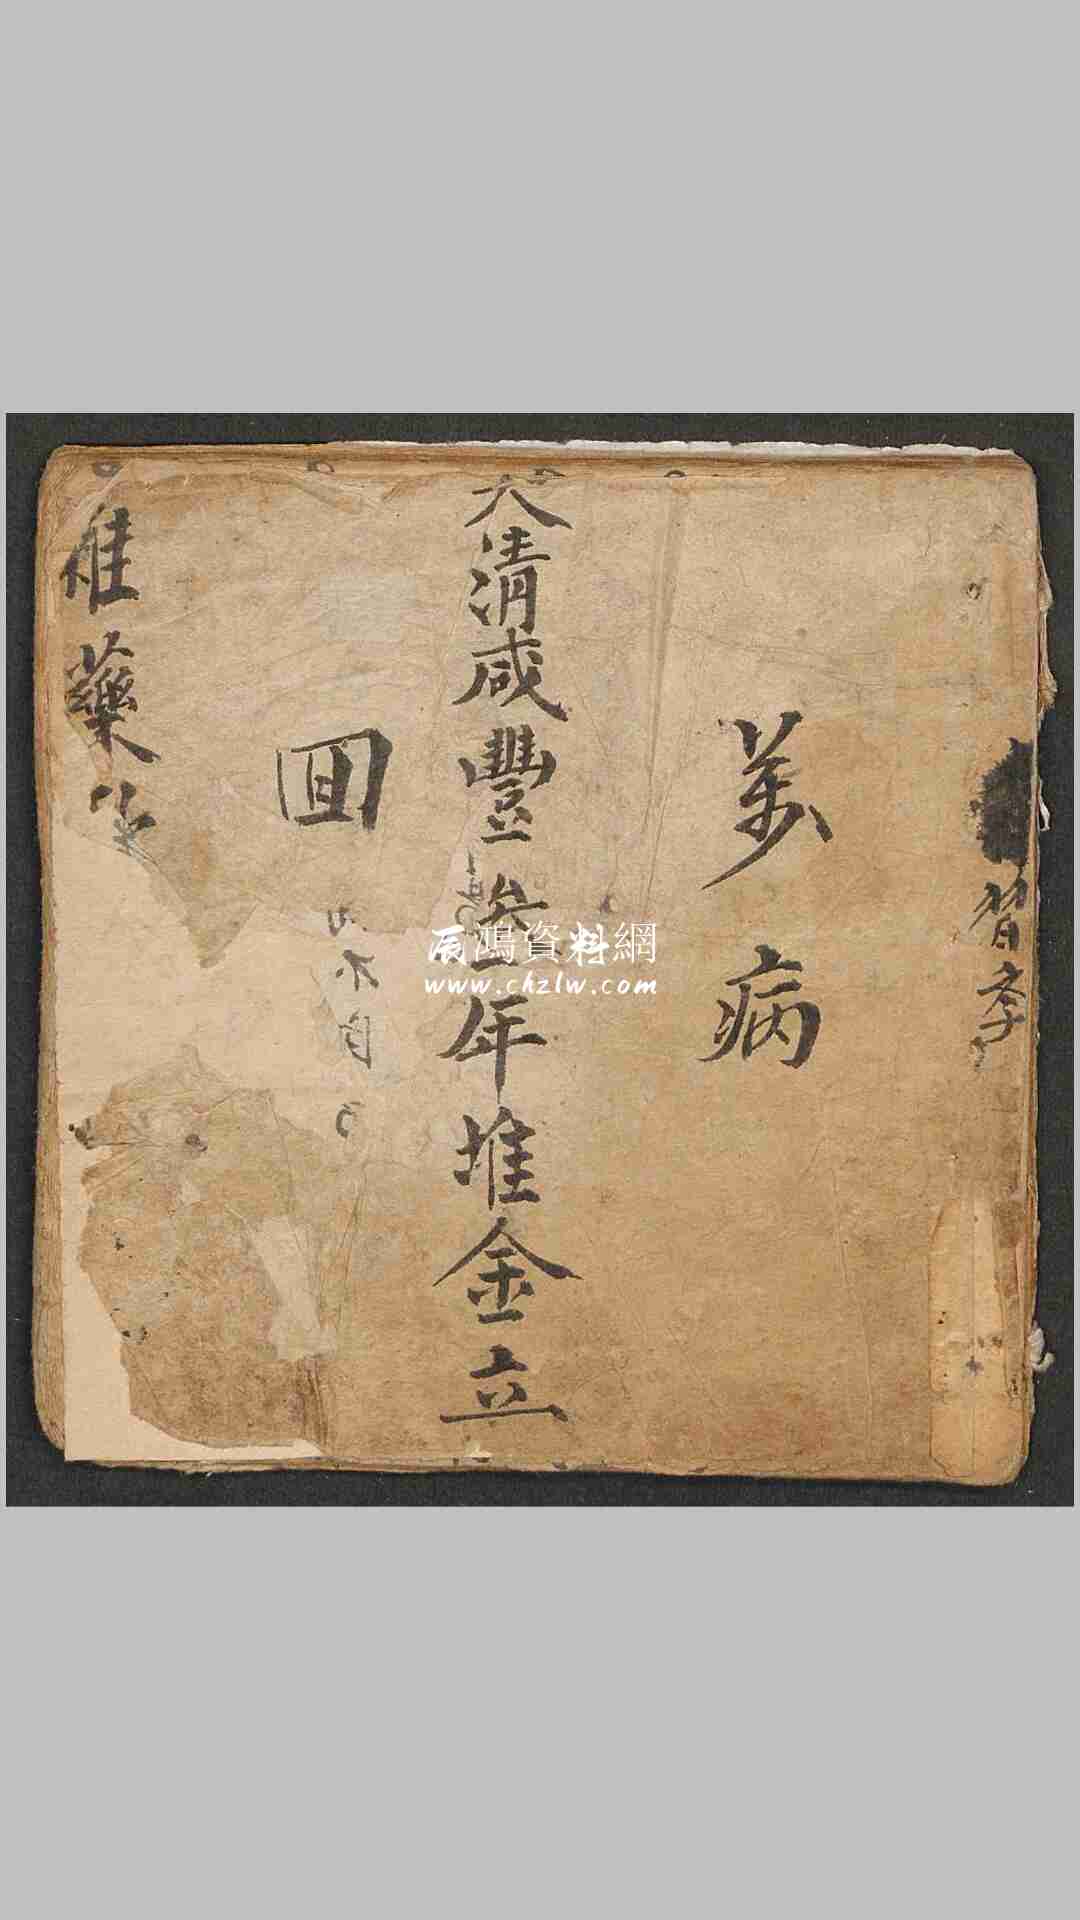 程祥清 雜藥匯集 1853年